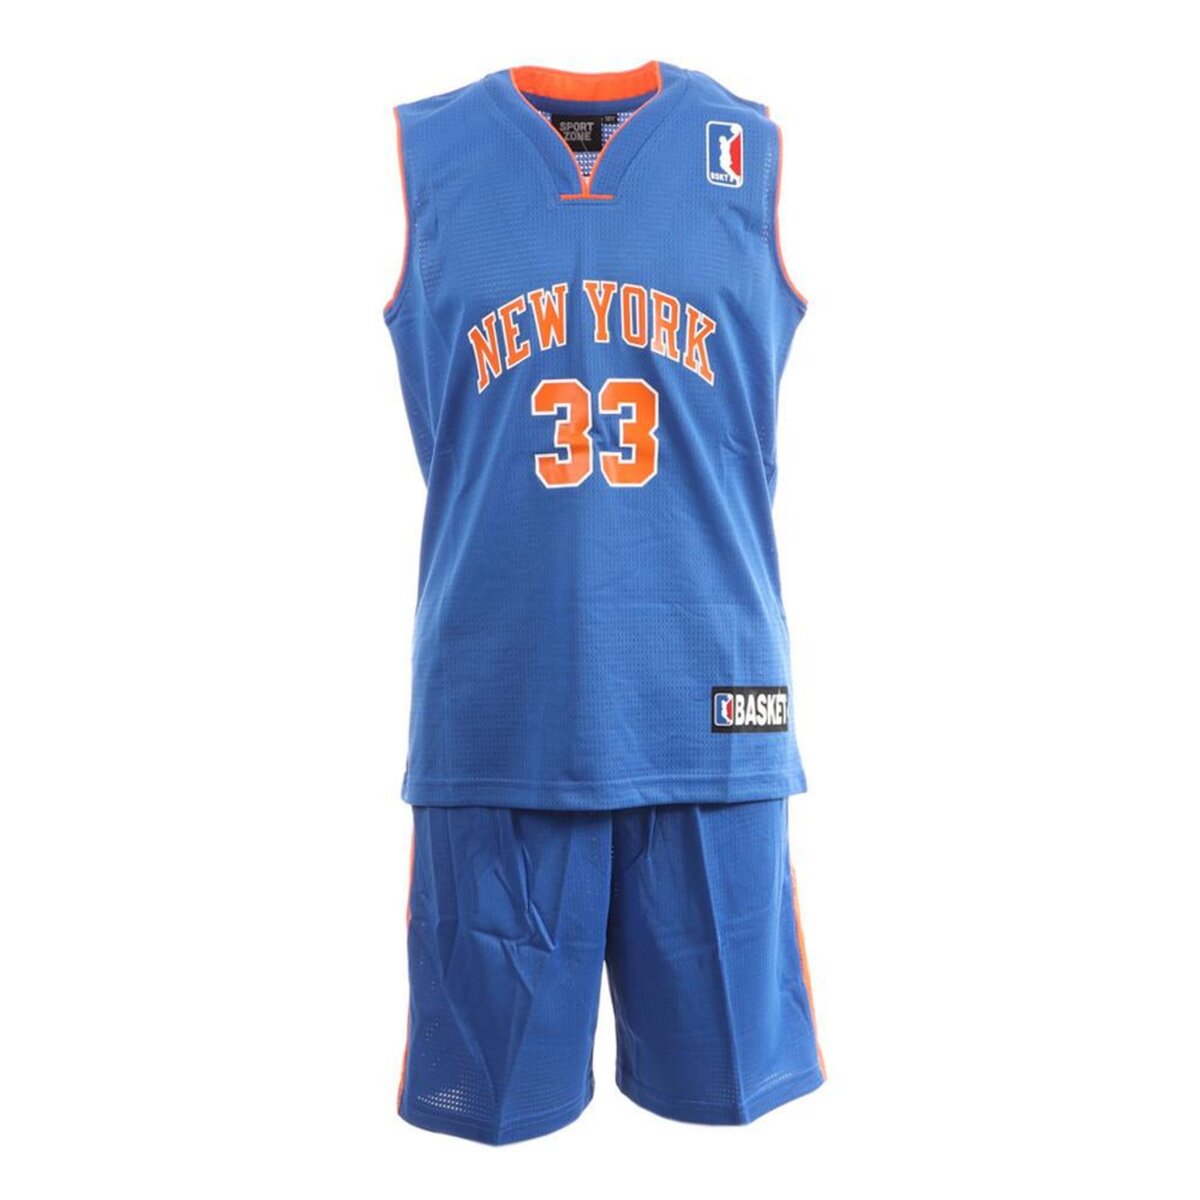  New York Ensemble de basket Bleu/Orange Enfant Sport Zone